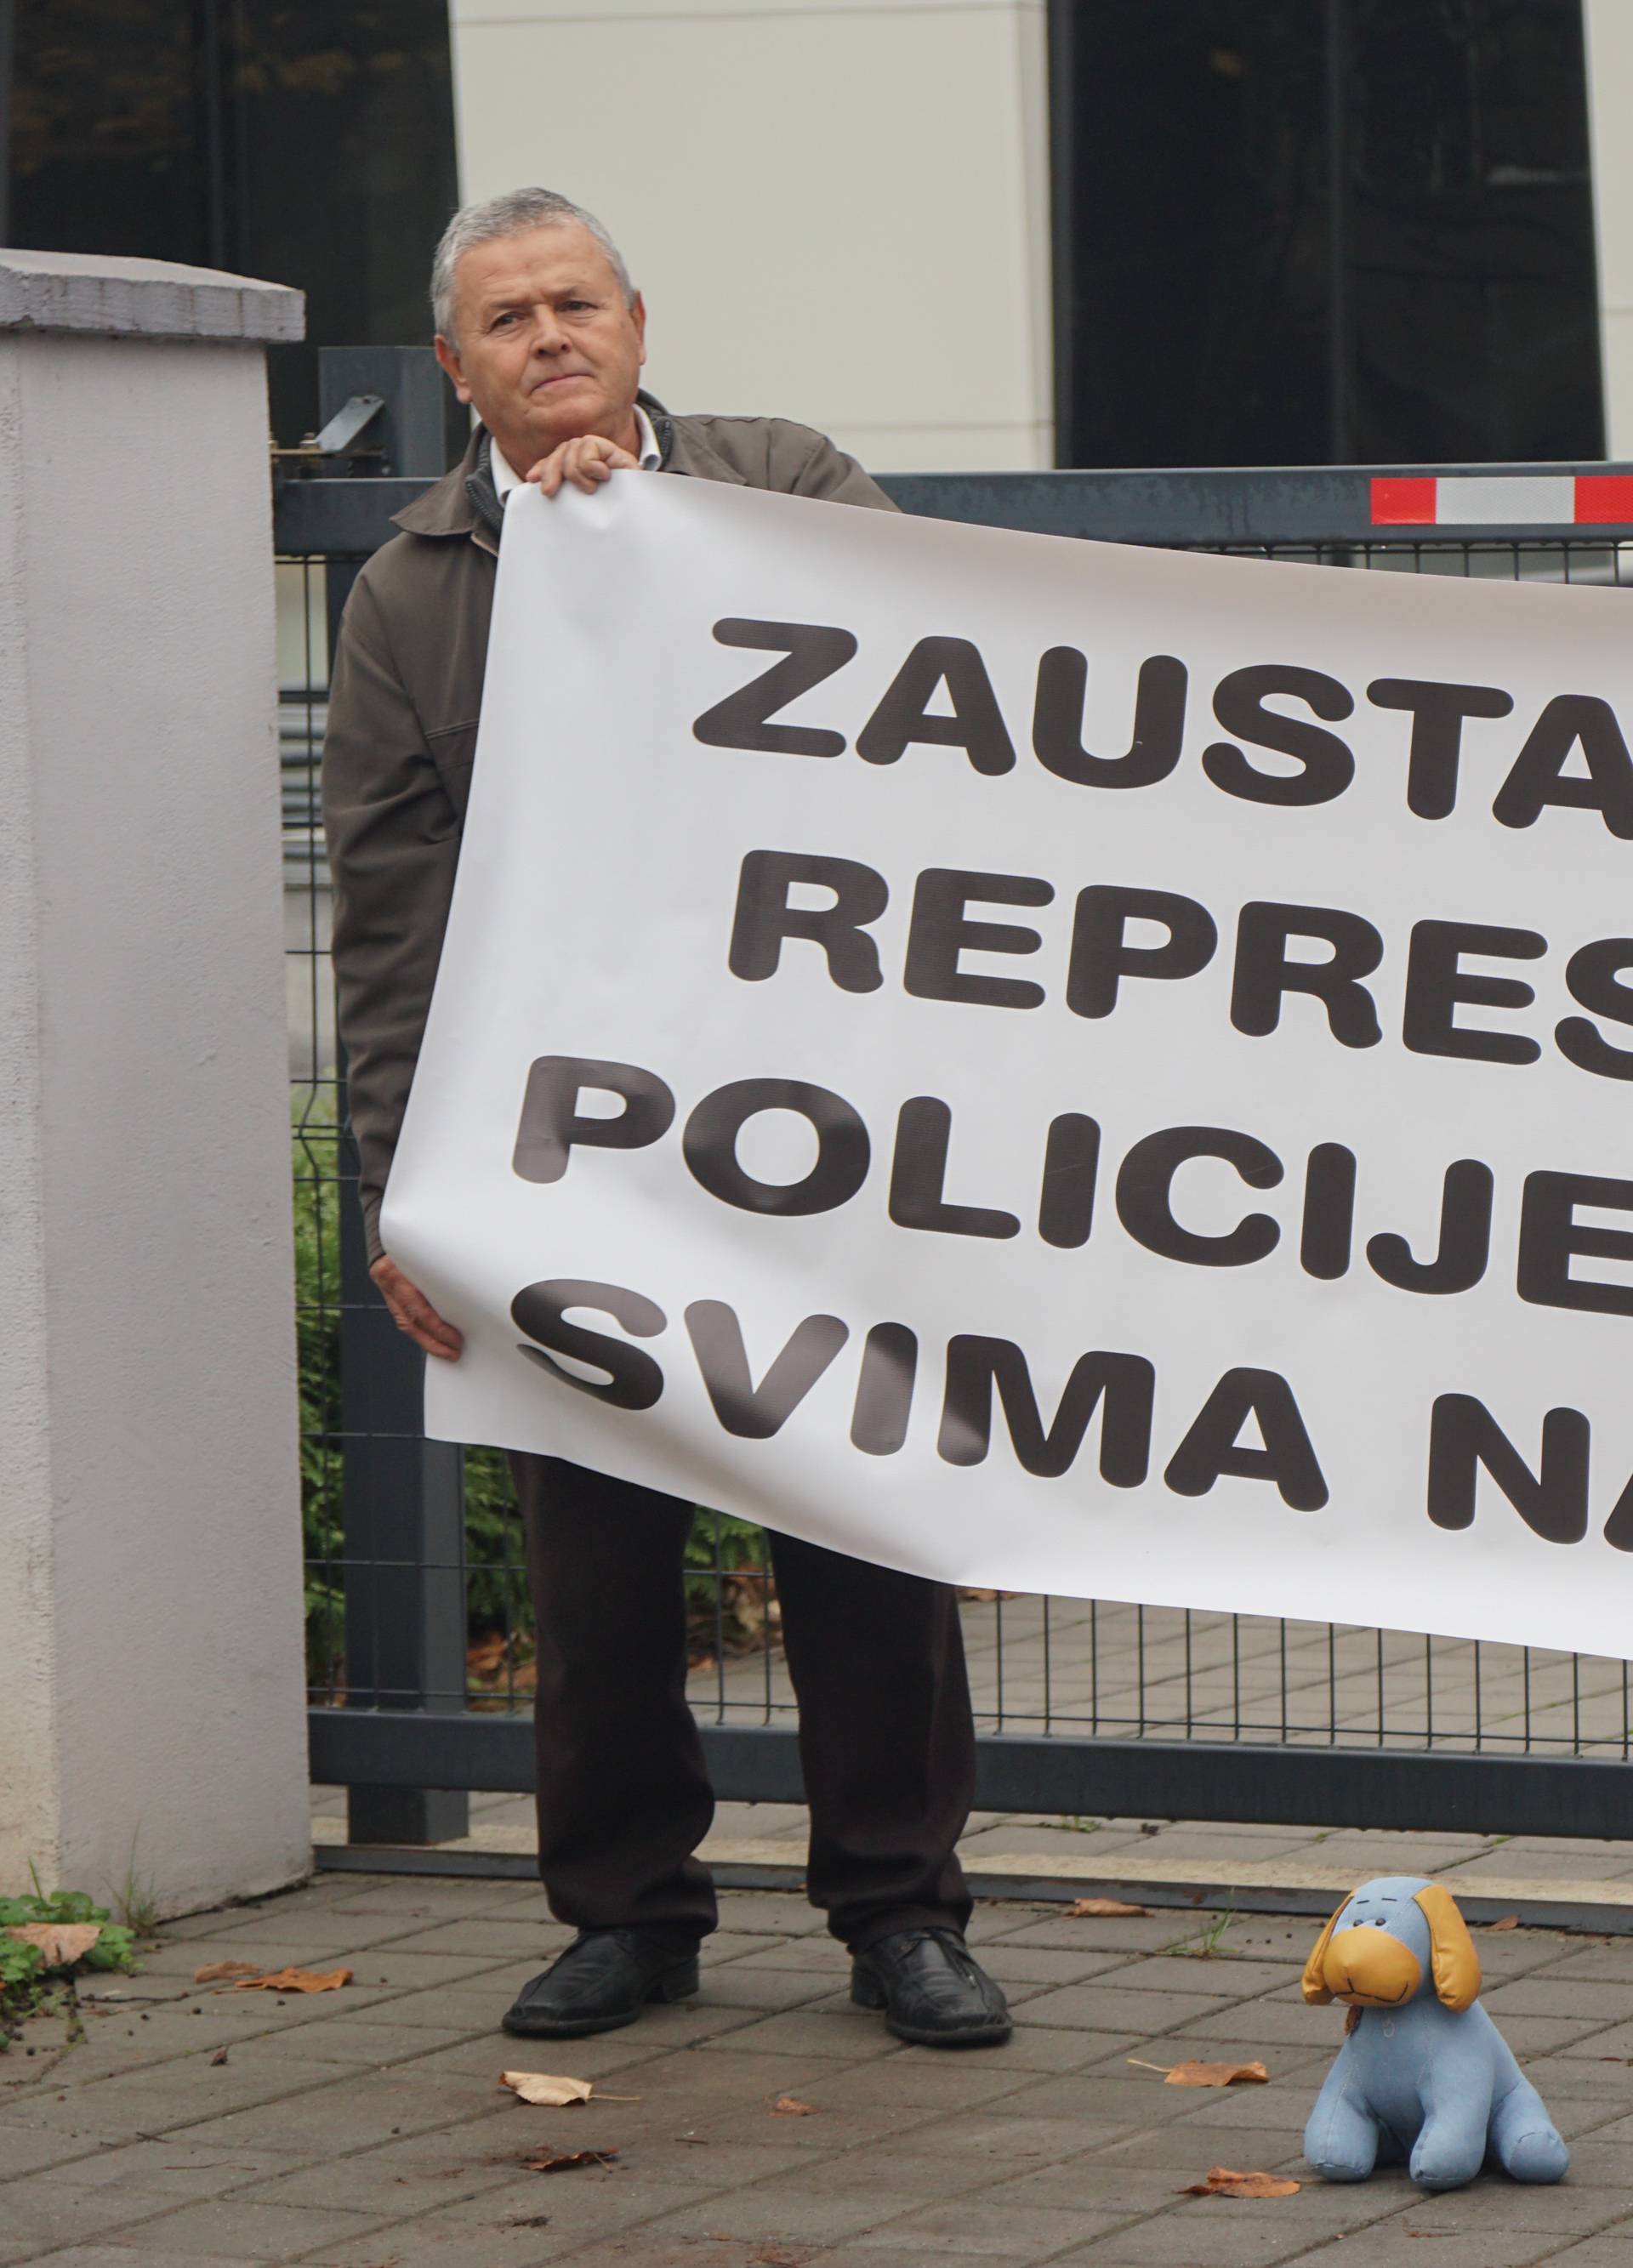 Svađa u BiH: Zbog 'Pravde za Davida' sporan novi šef policije